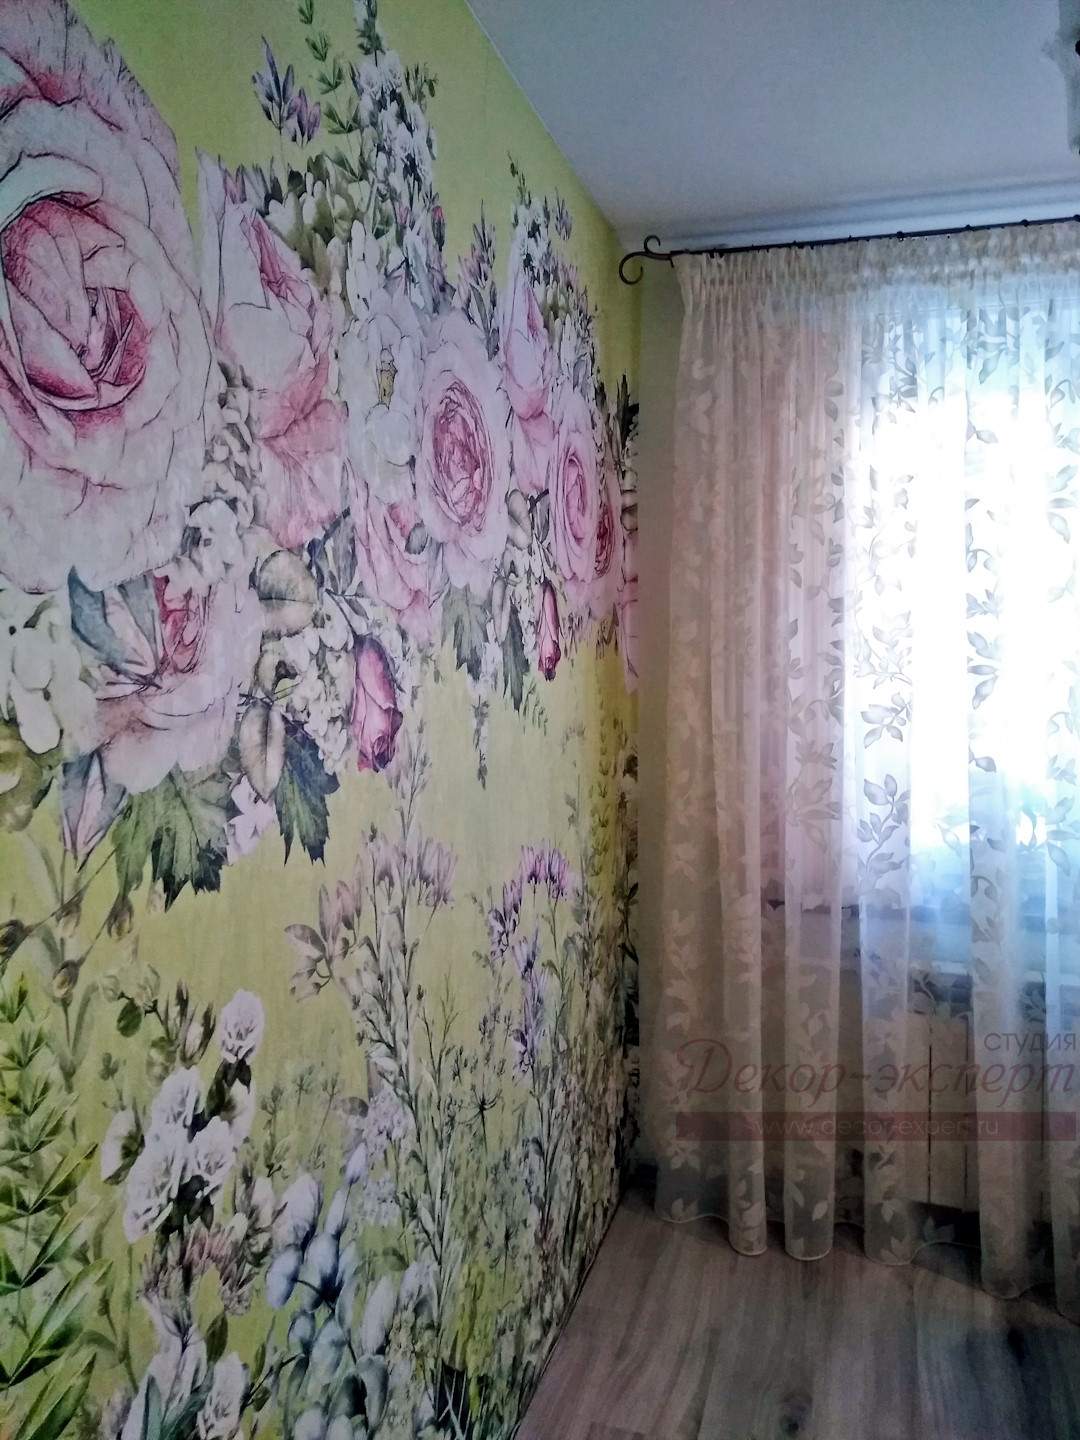 Фотообои с розами на стене кухни и тюль деворе на окне при дневном освещении.